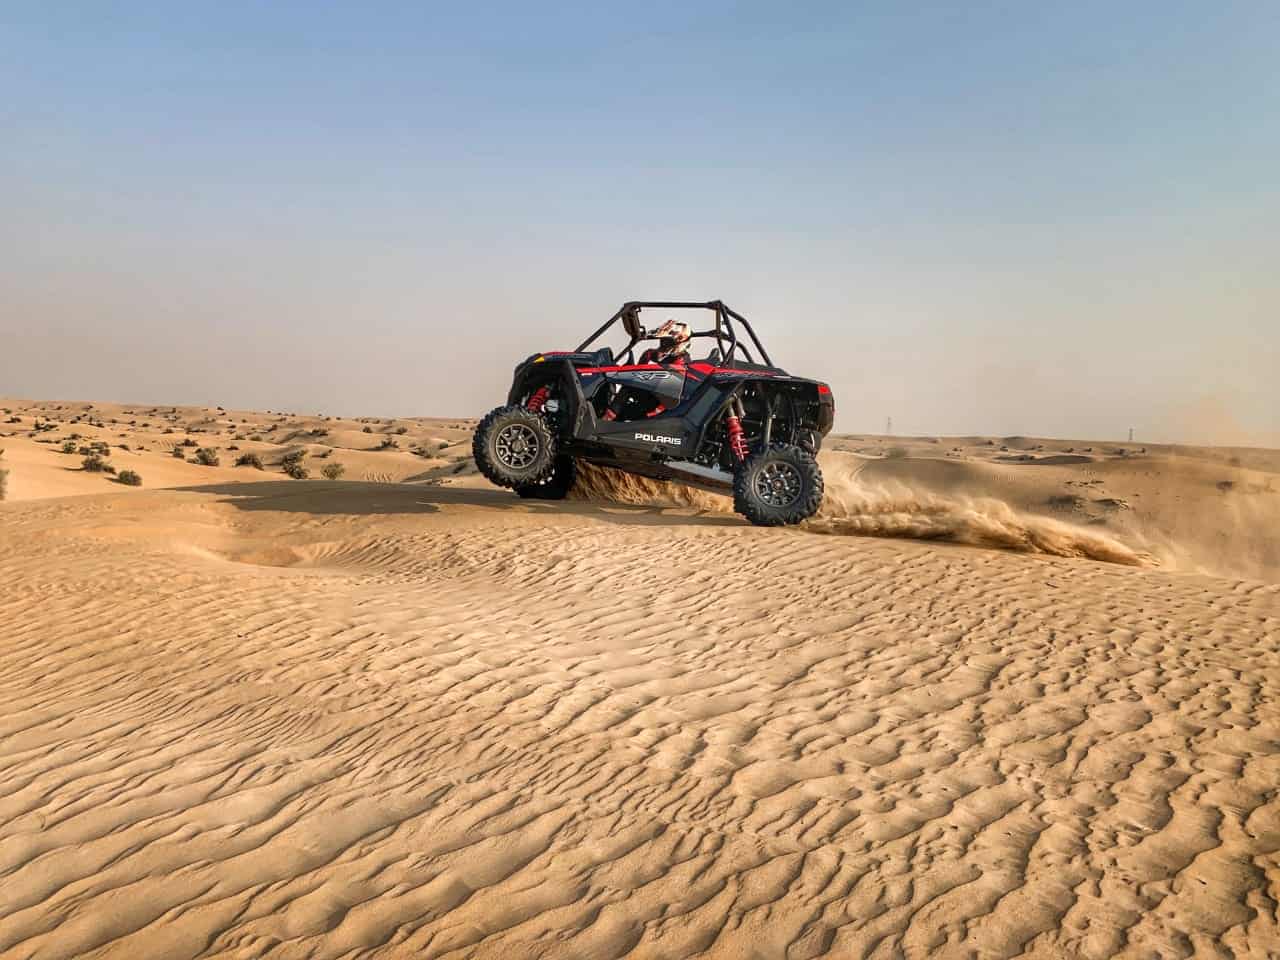 Al Qudra desert Locations in Dubai for Dune Buggy Adventures